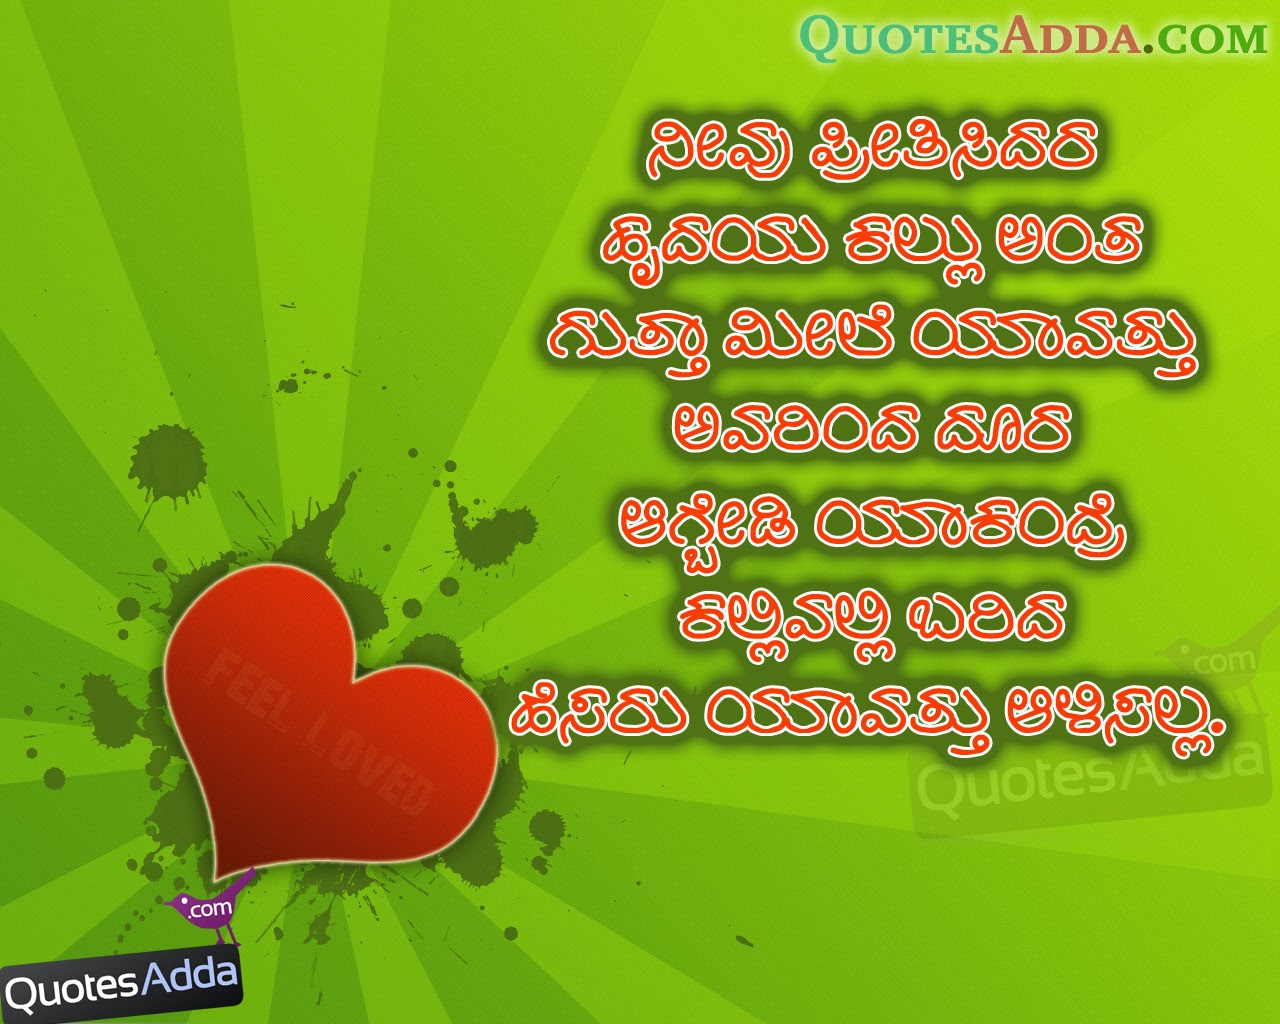 Kannada Love Quotes 1 | Quotes Adda.com | Telugu Quotes | Tamil Quotes ...